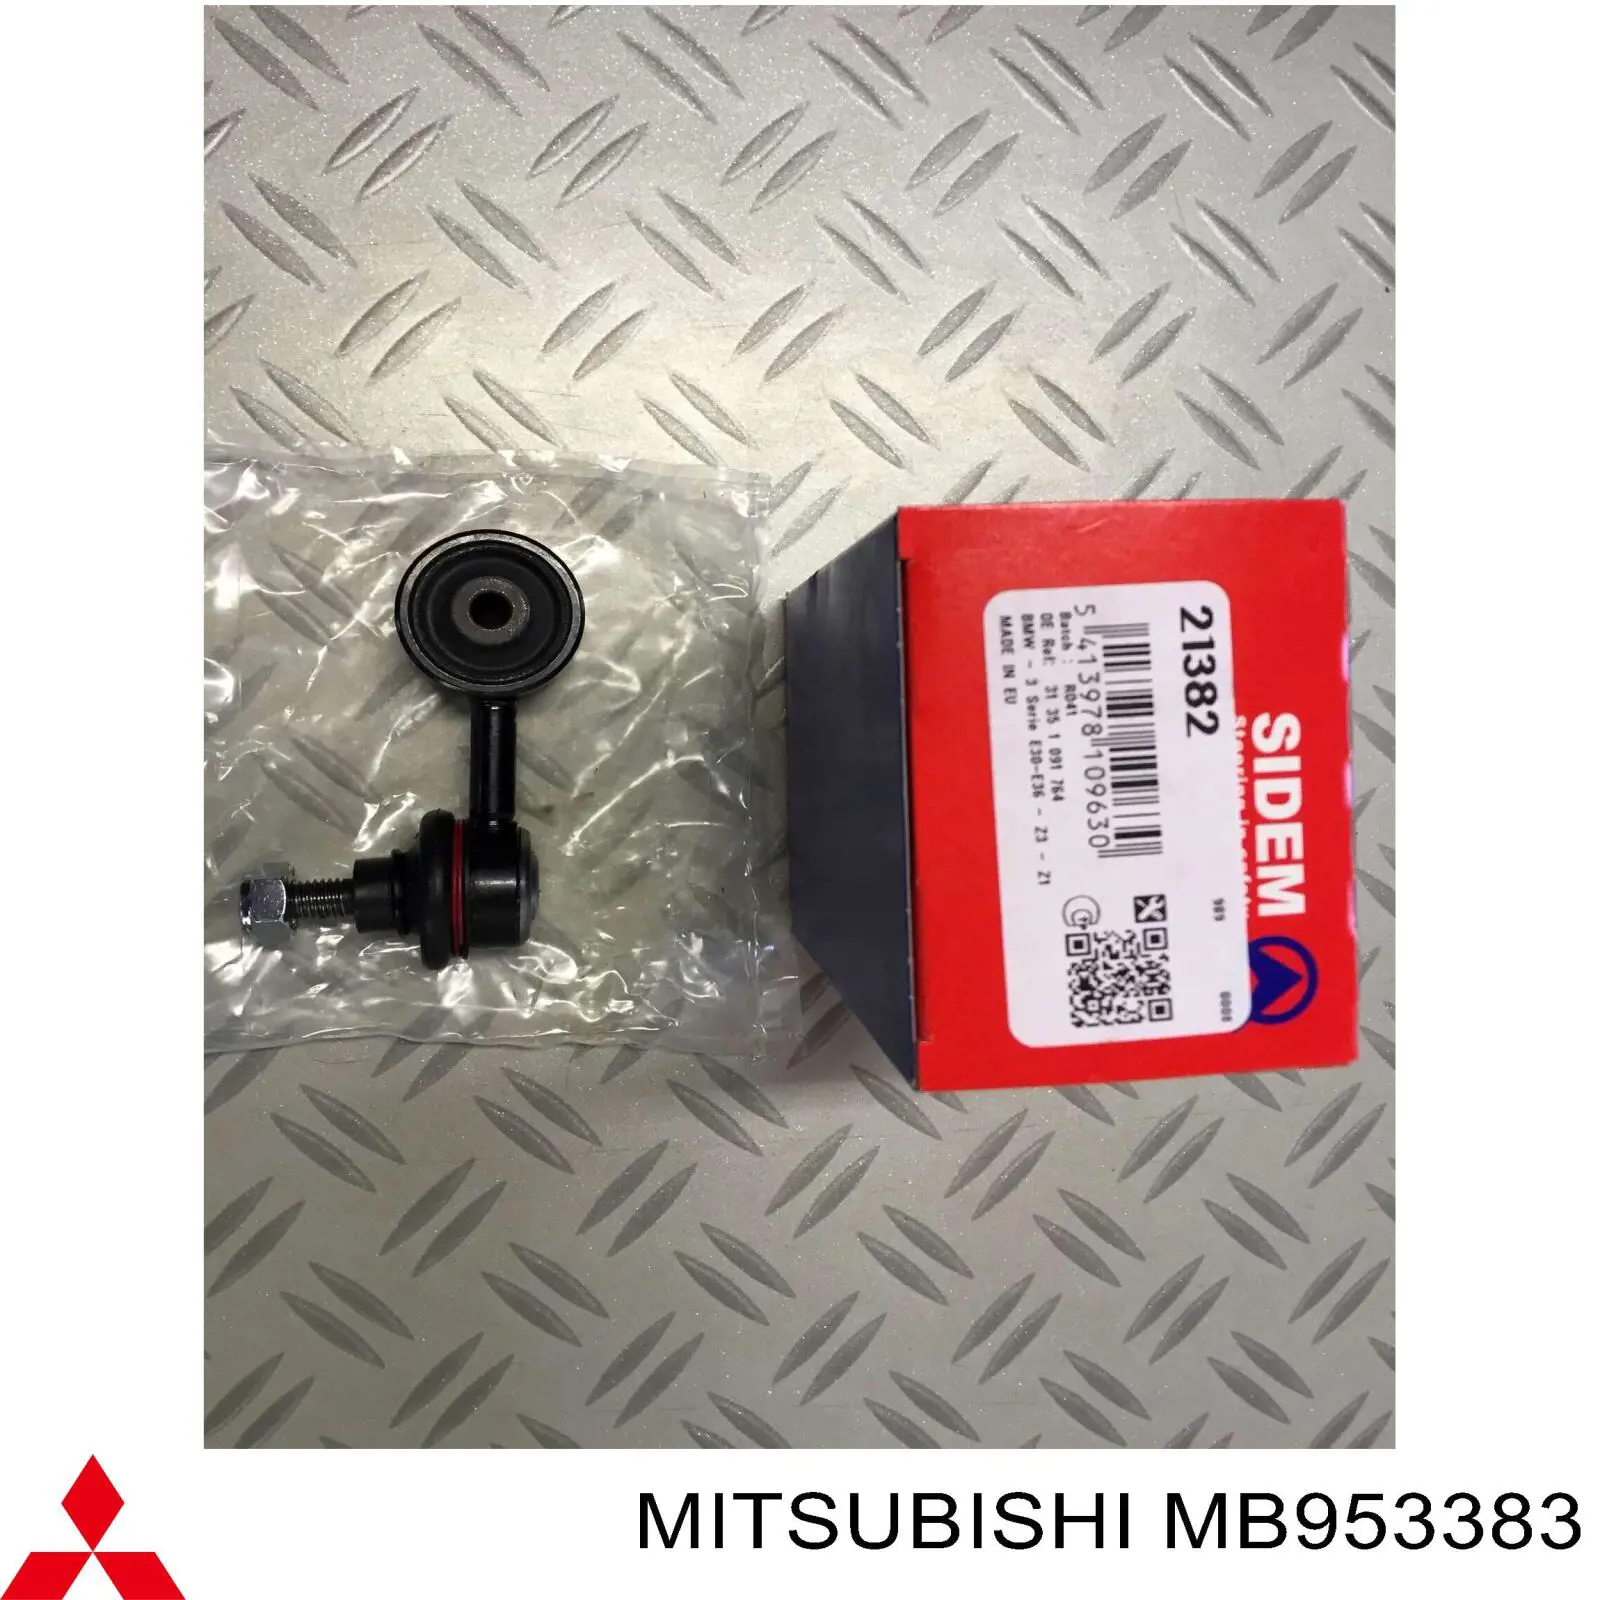 MB953383 Mitsubishi relê de pisca-pisca